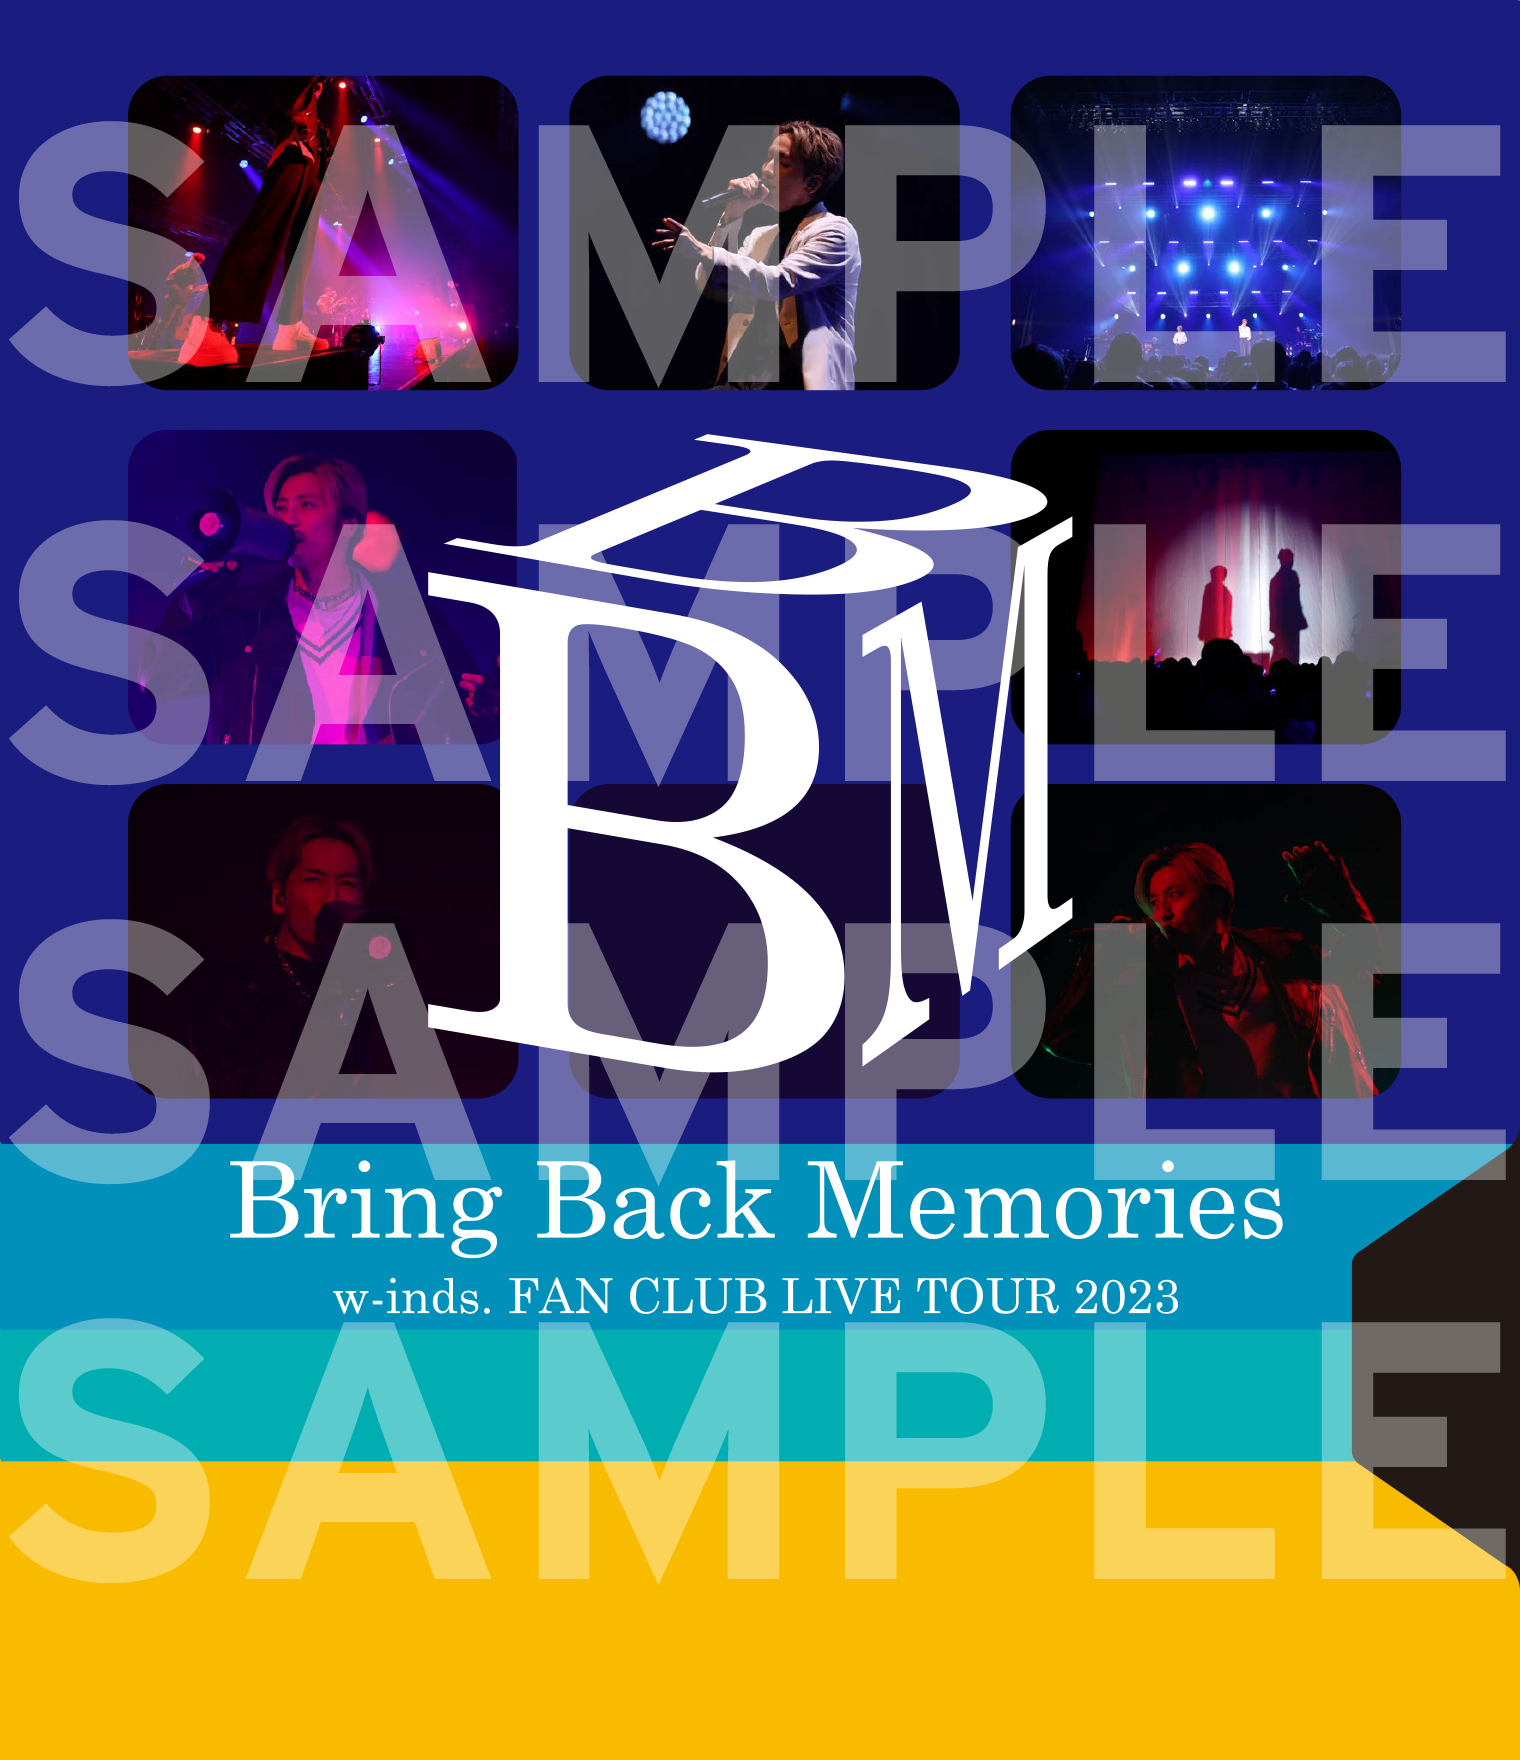 BACK TO THE MEMORIES BTTM 1 2 Blu-ray | nate-hospital.com